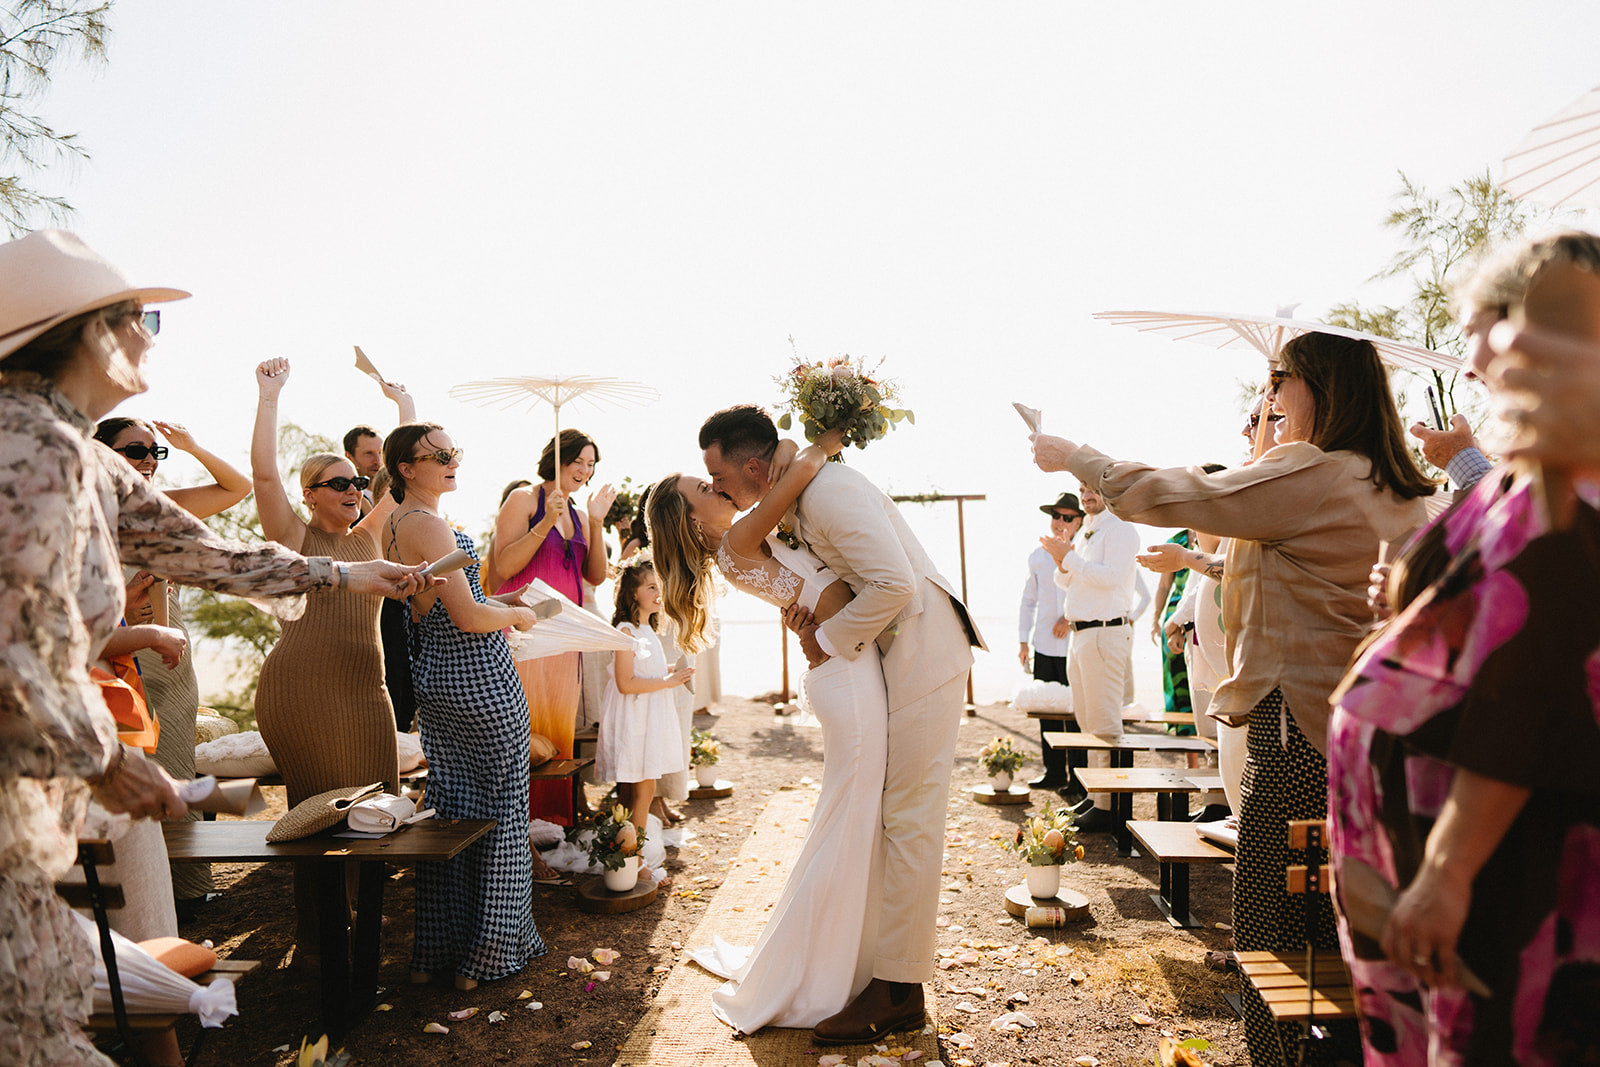 Hannah & Austin - Beija Flor Real Wedding - Bride and Groom wedding endearment kiss